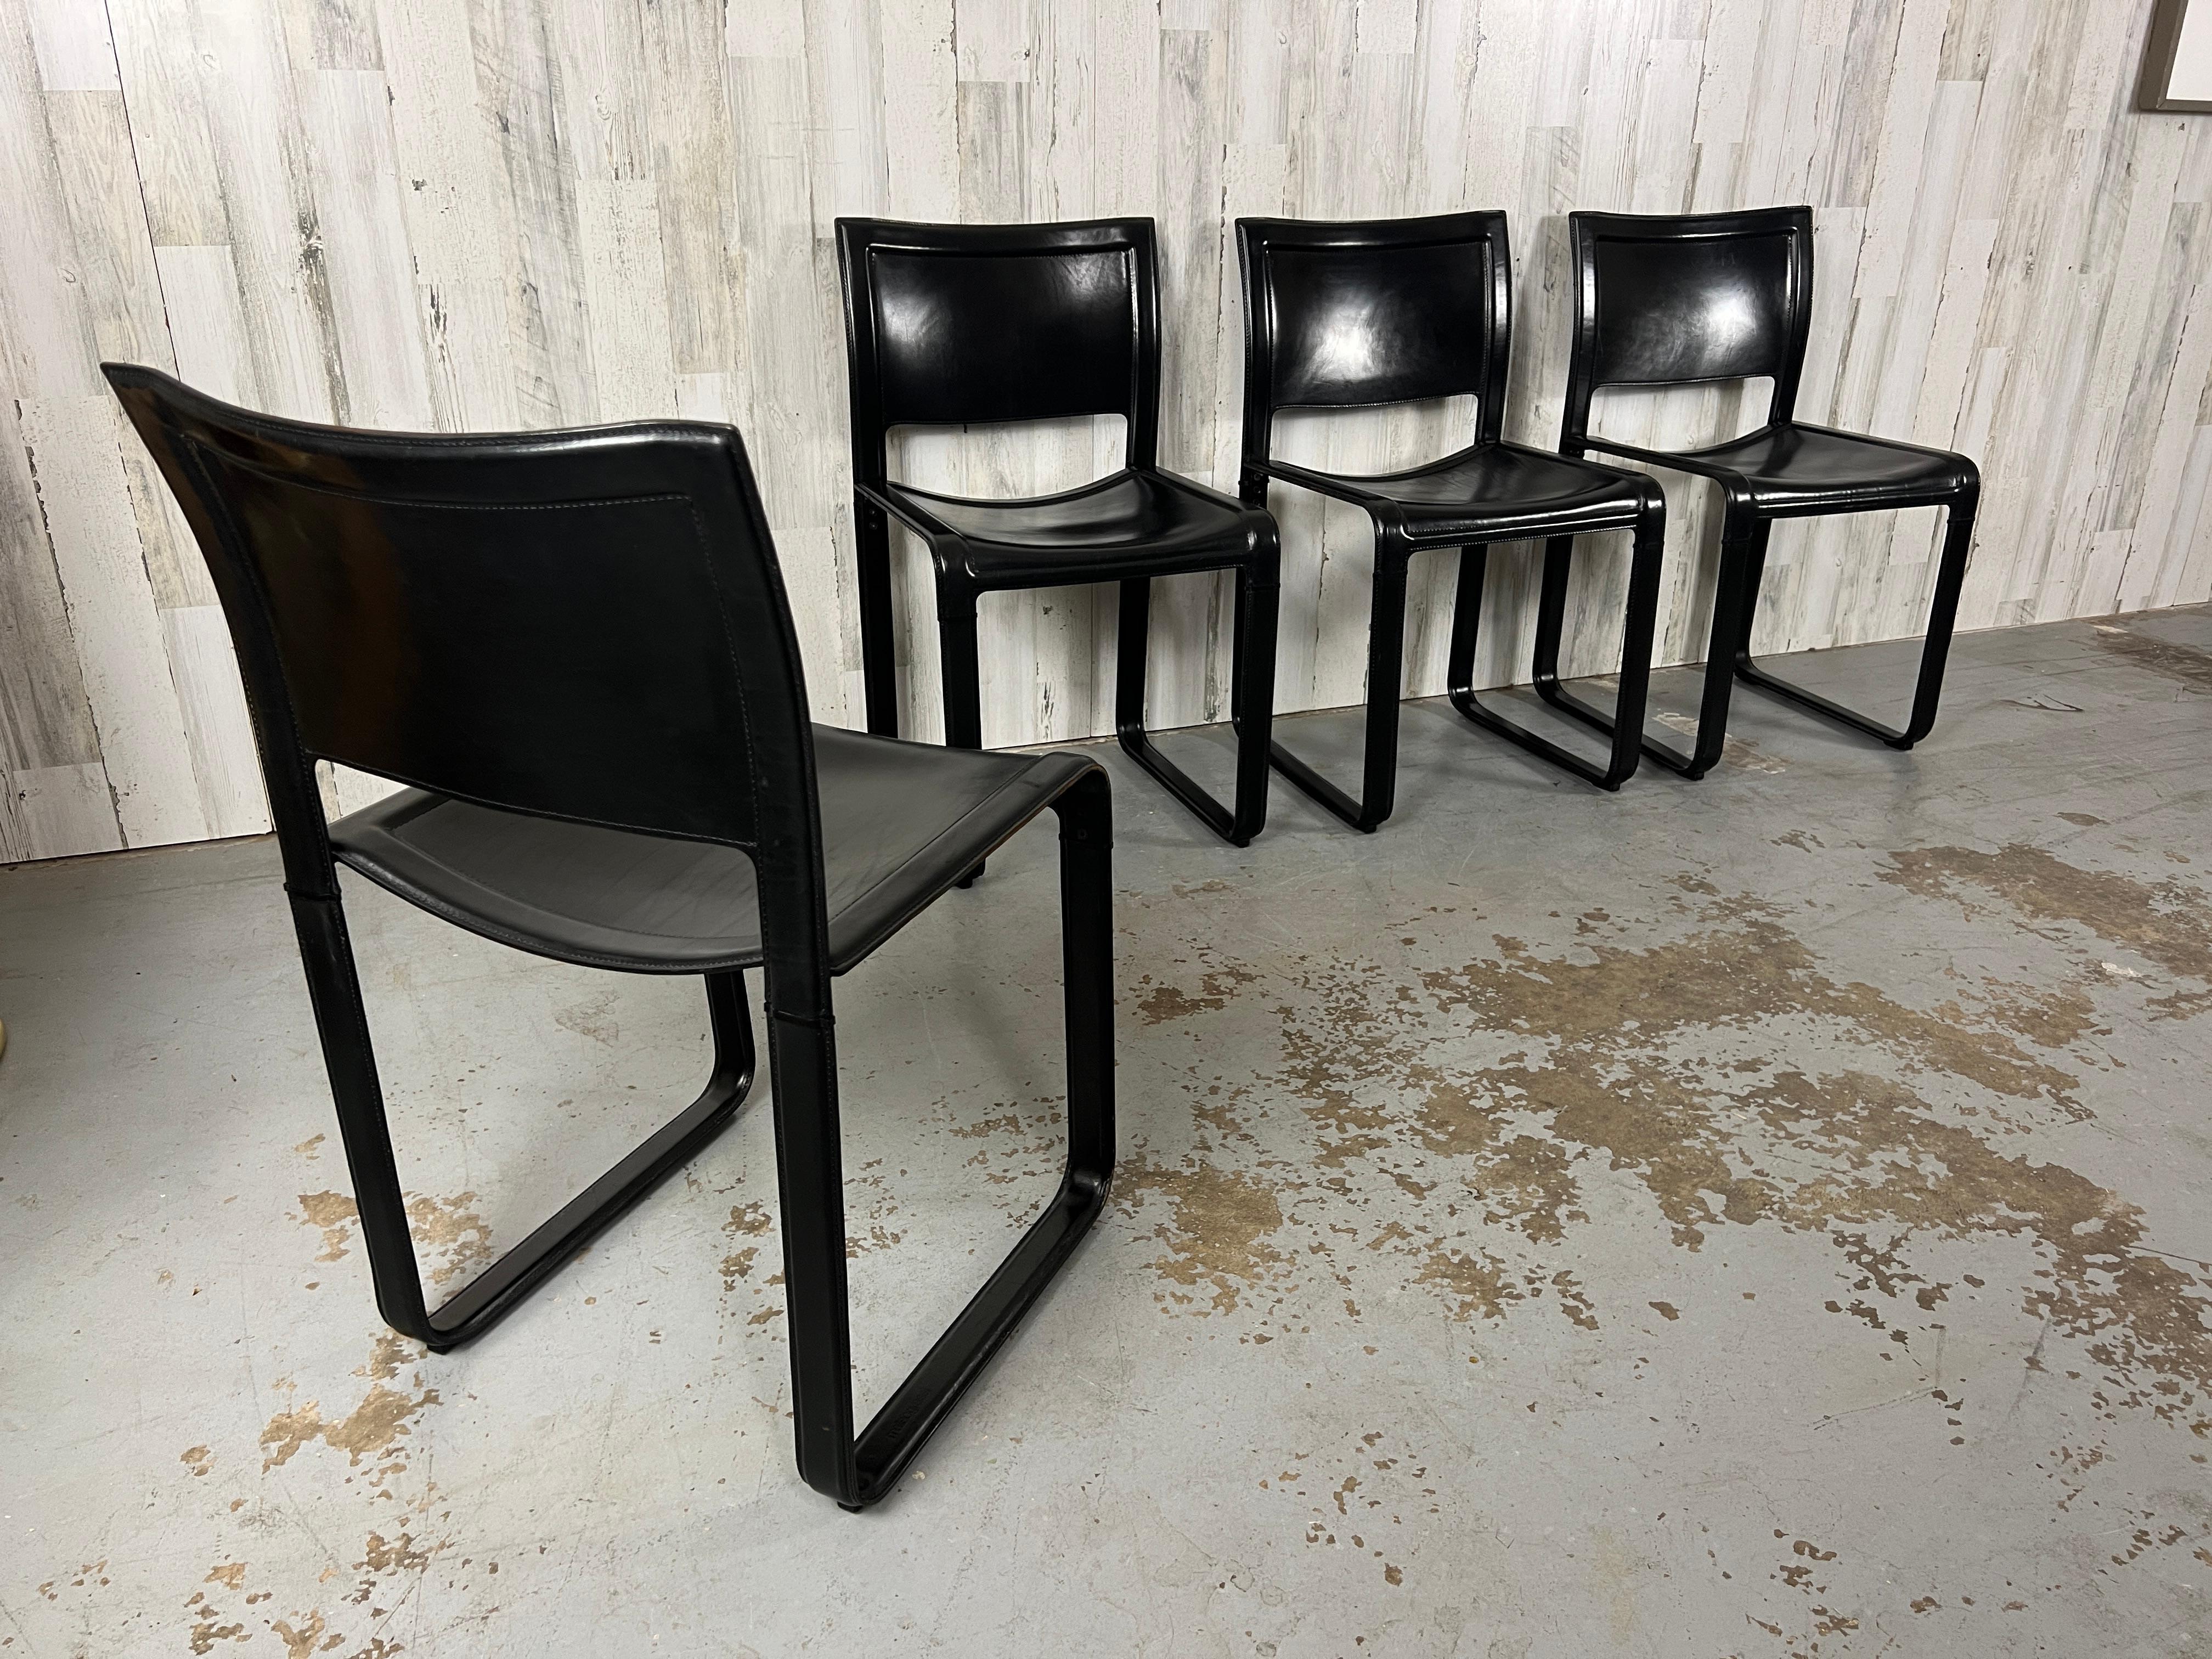 Satz von vier lederbezogenen und genähten Esszimmerstühlen von Matteo Grassi
Matteo Grassi ist ein italienischer Möbeldesigner und -hersteller, der für seine außergewöhnliche Handwerkskunst und sein innovatives Design bekannt ist. 